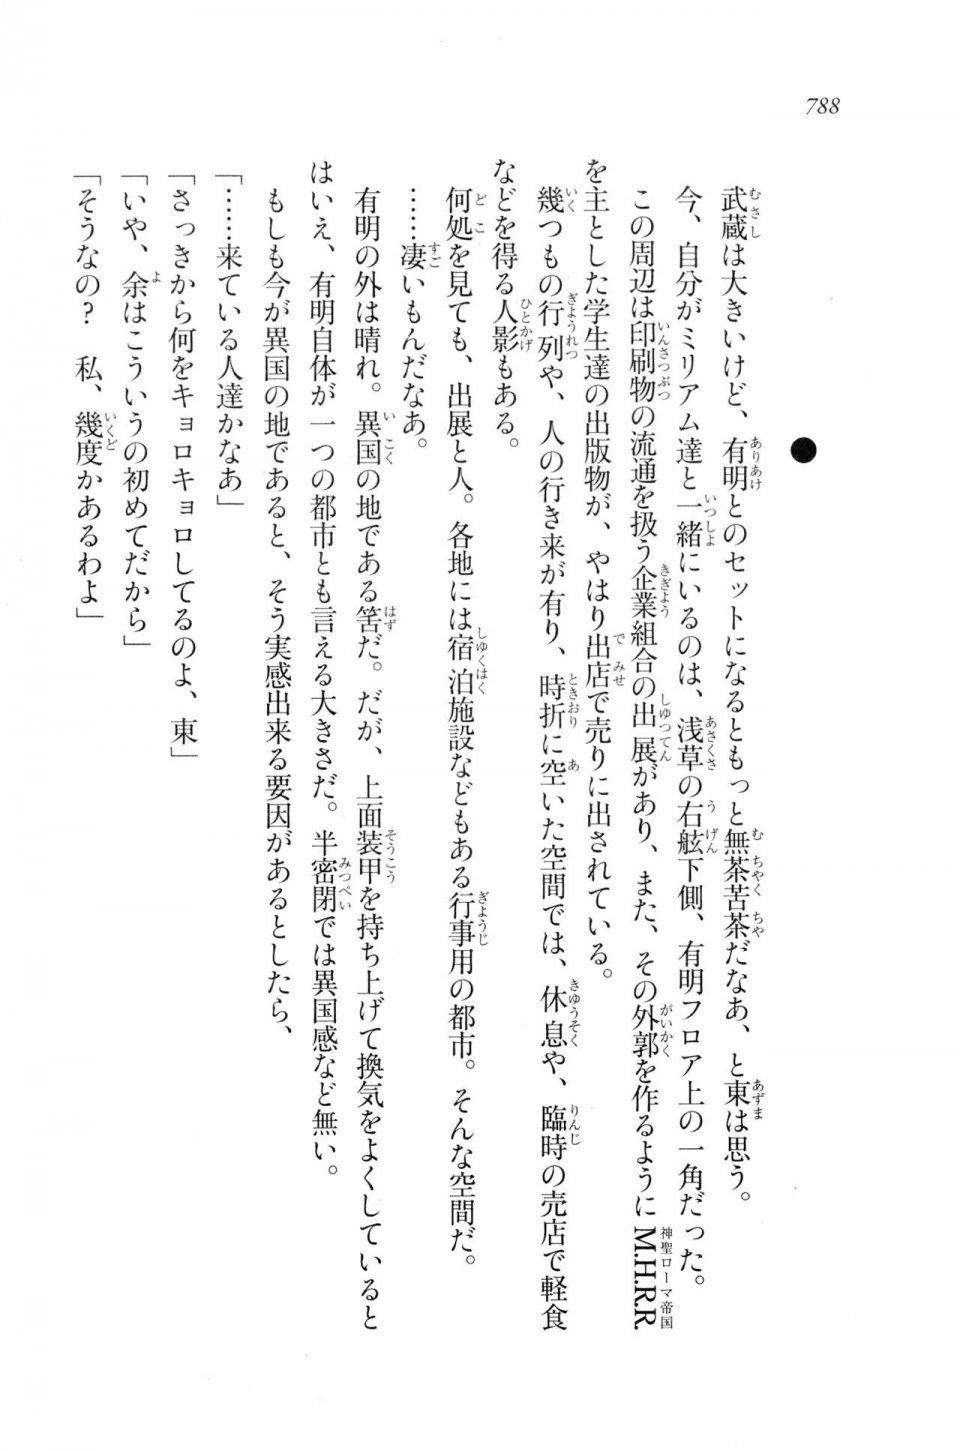 Kyoukai Senjou no Horizon LN Vol 20(8B) - Photo #788